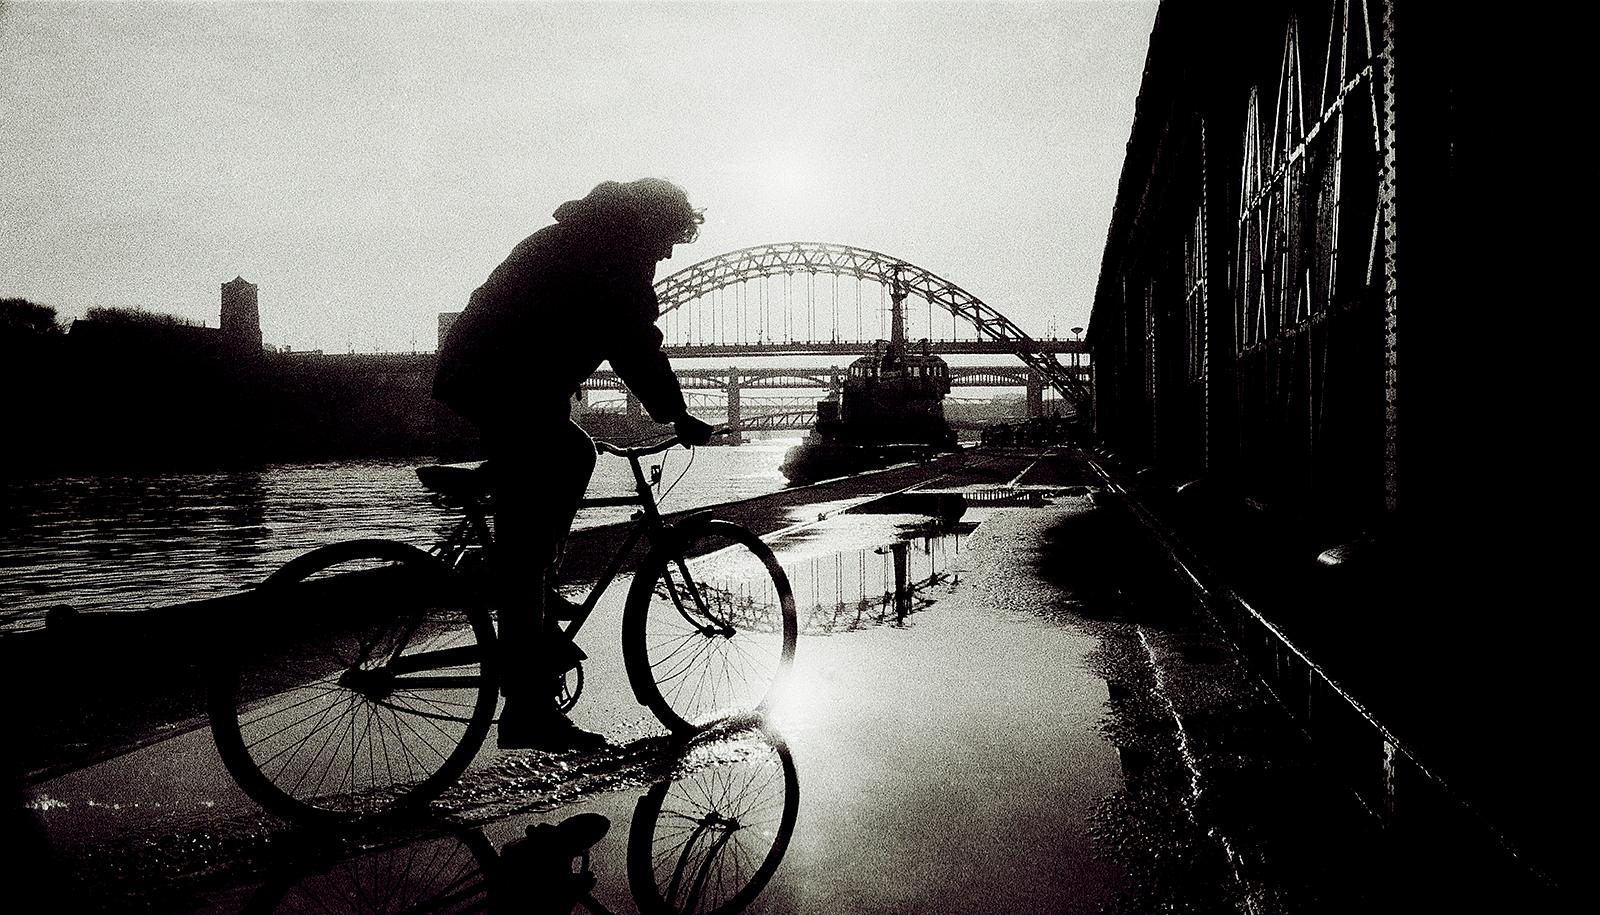 Landscape Photograph Ian Sanderson - Newcastle - Impression d'œuvres d'art en édition limitée signée, photo en noir et blanc, City